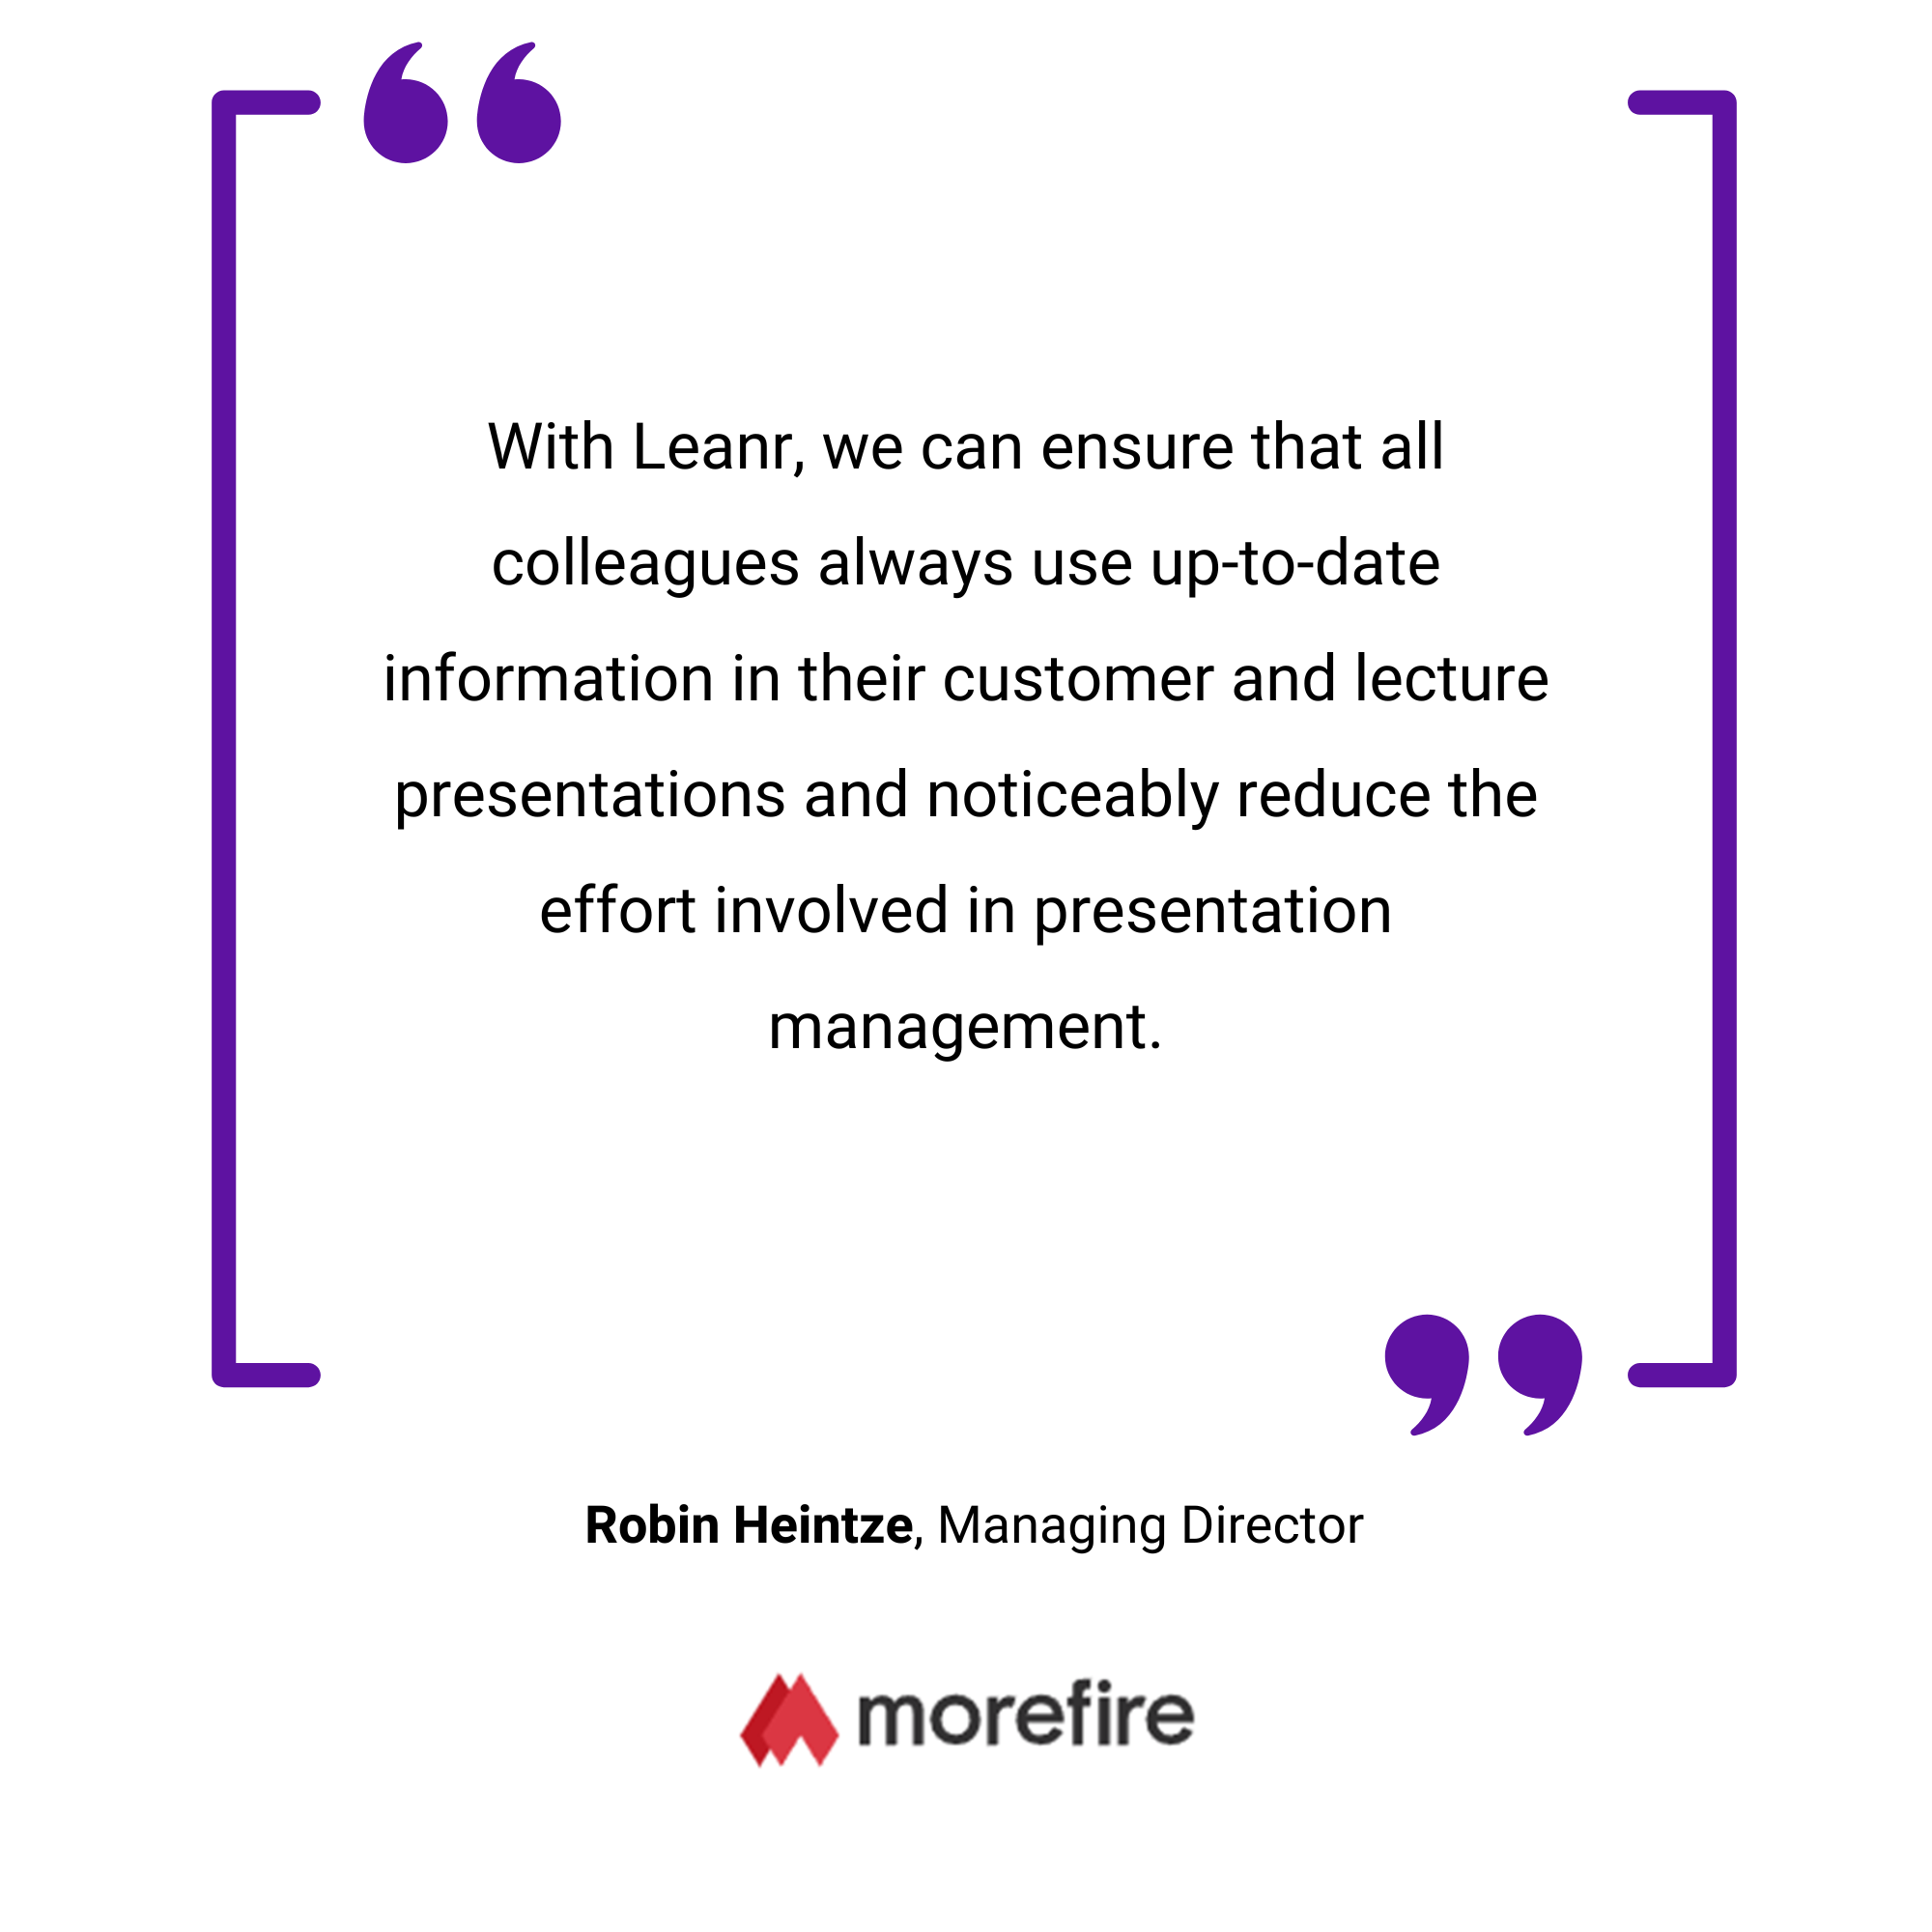 Eine Werbegrafik mit einem Zitat von Robin Heintze zur Verbesserung der Kundenbeziehungen, das Morefire zugeschrieben wird und in violette Ränder eingefasst ist.